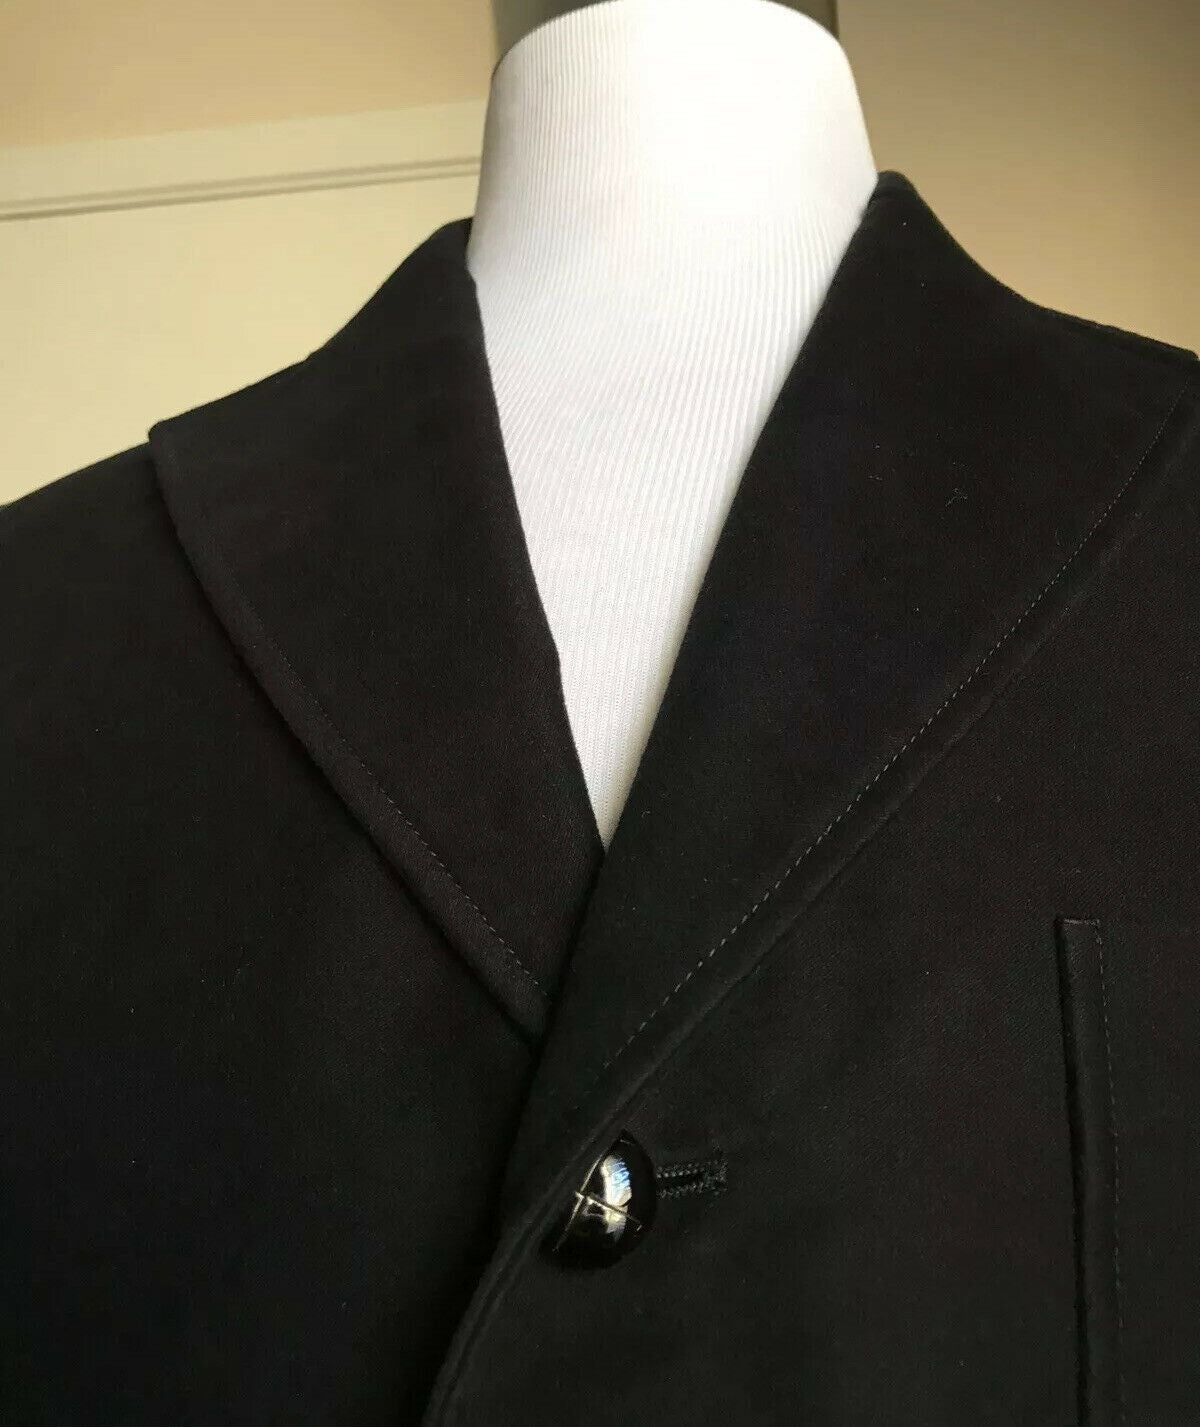 Новое мужское пальто большого размера из хлопка с молескином от Gucci за 2400 долларов США, черный 42 США/52 ЕС